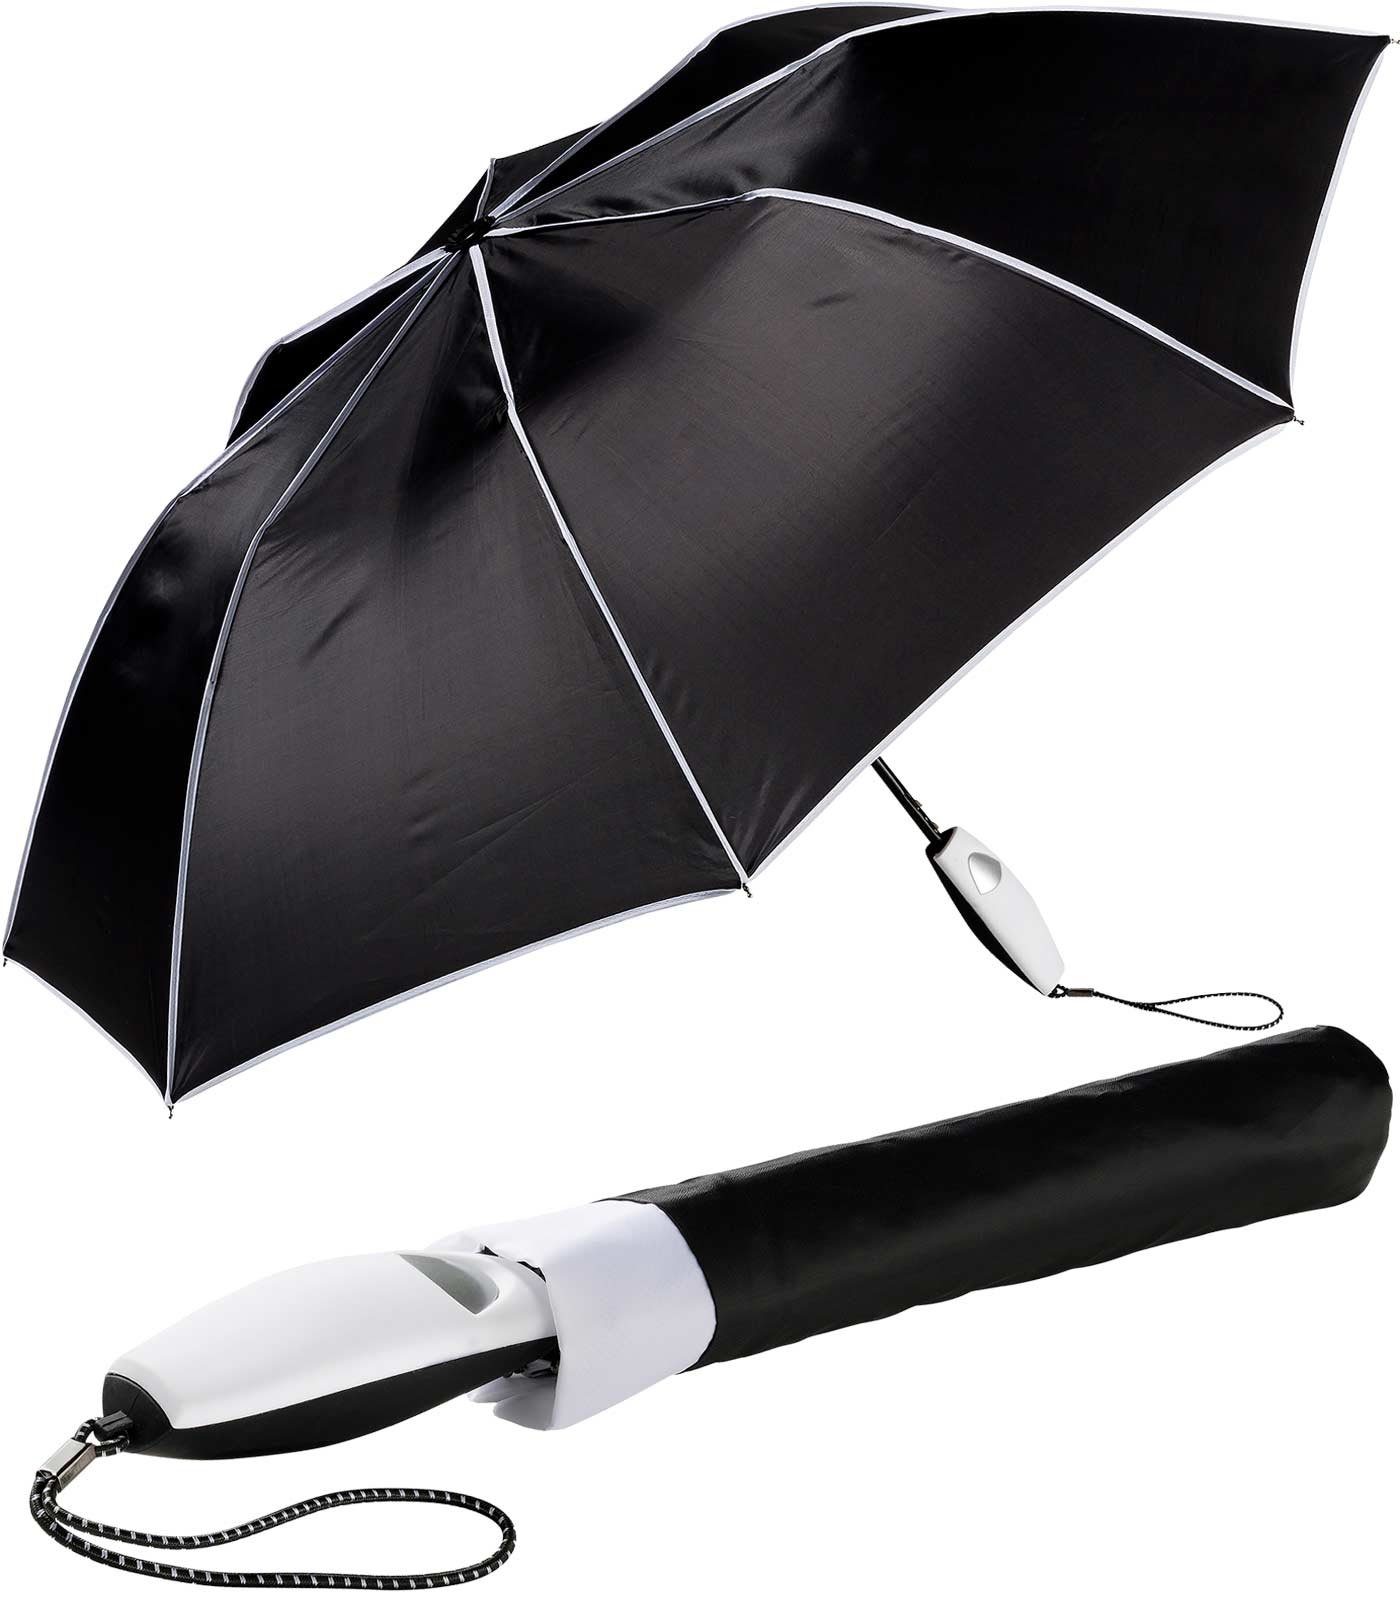 Impliva Taschenregenschirm Falconetti Auf-Automatik farblich passender Griff, auffallend schwarz-weiß